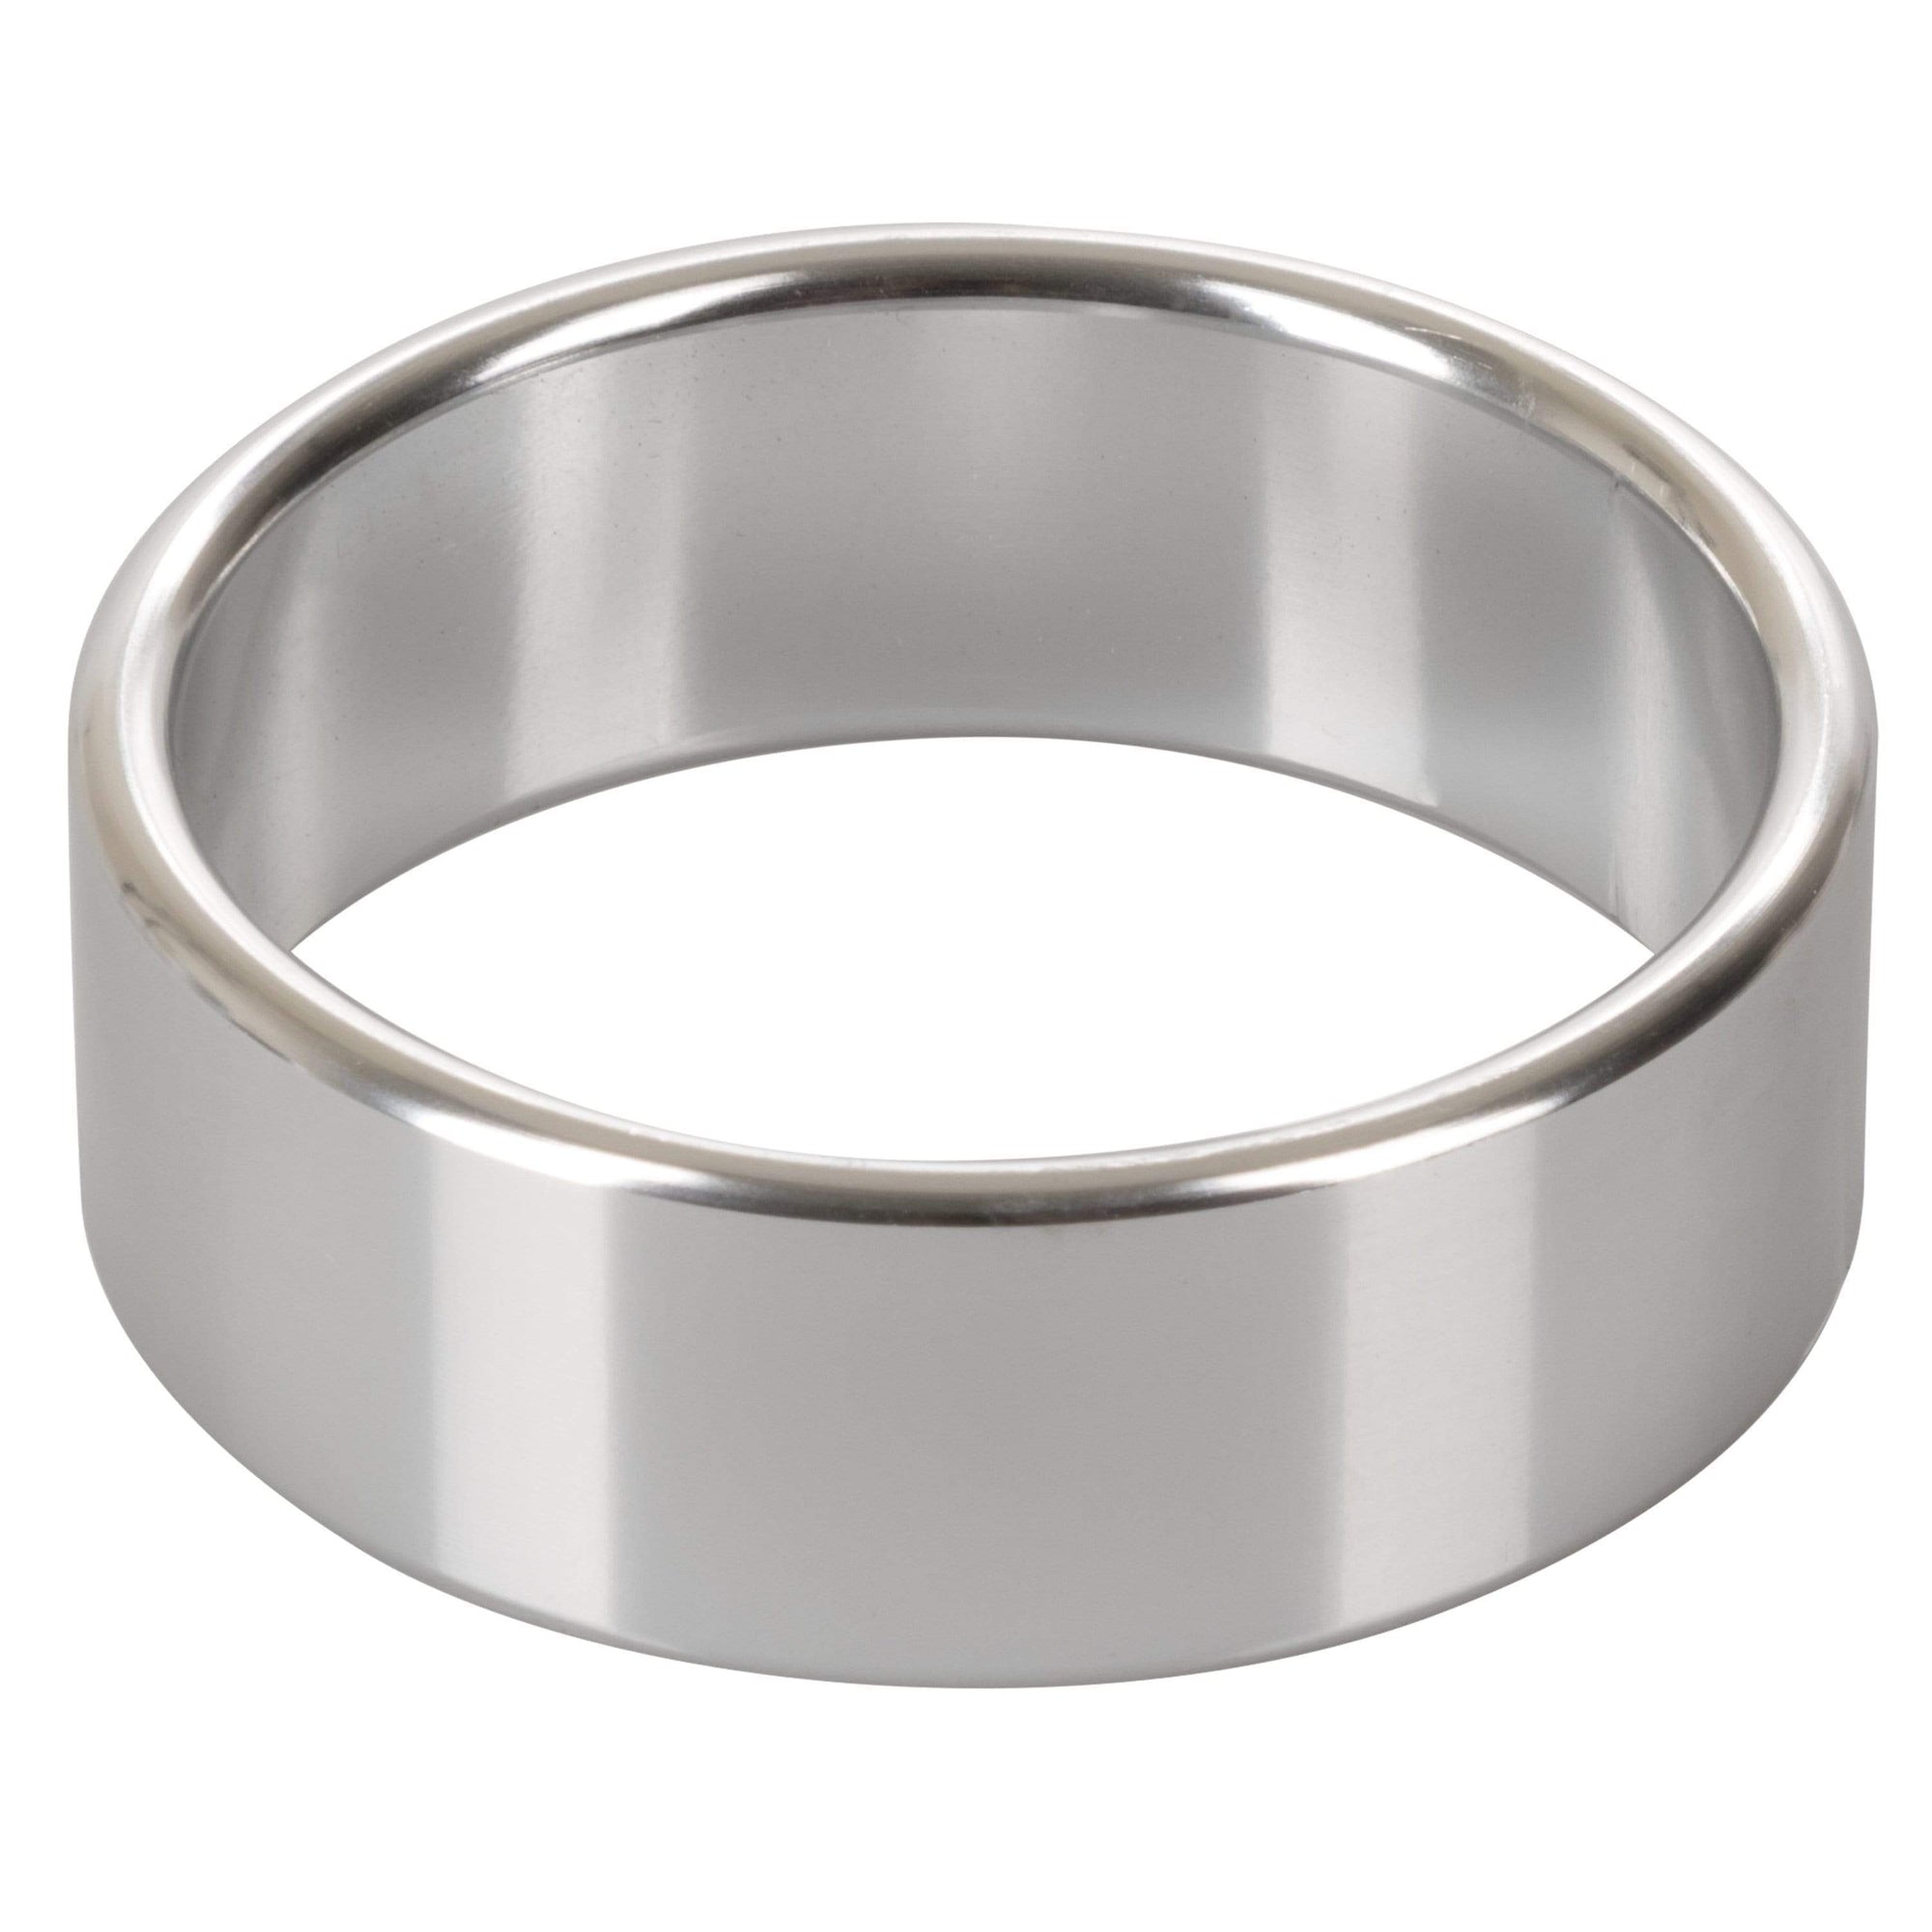 California Exotics - Alloy Metallic Cock Ring Extra Large (Silver) -  Metal Cock Ring (Non Vibration)  Durio.sg